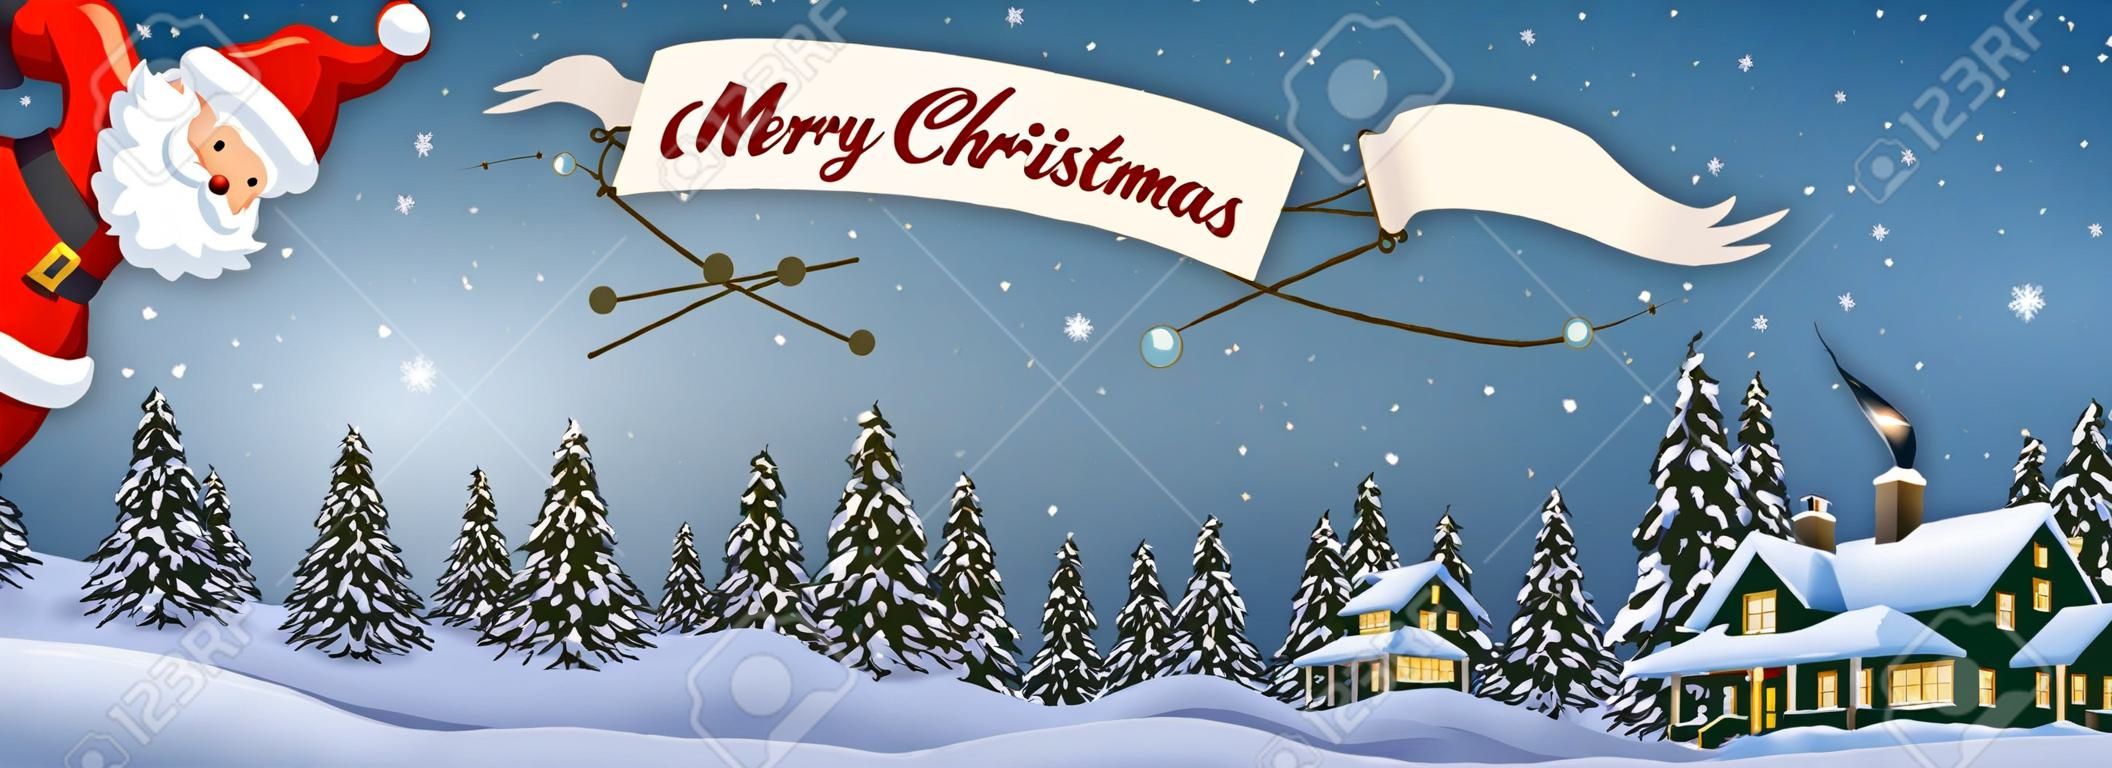 De santa claus dibujos animados de volar en avión con la bandera feliz mensaje de navidad en la noche en Navidad paisaje nevado